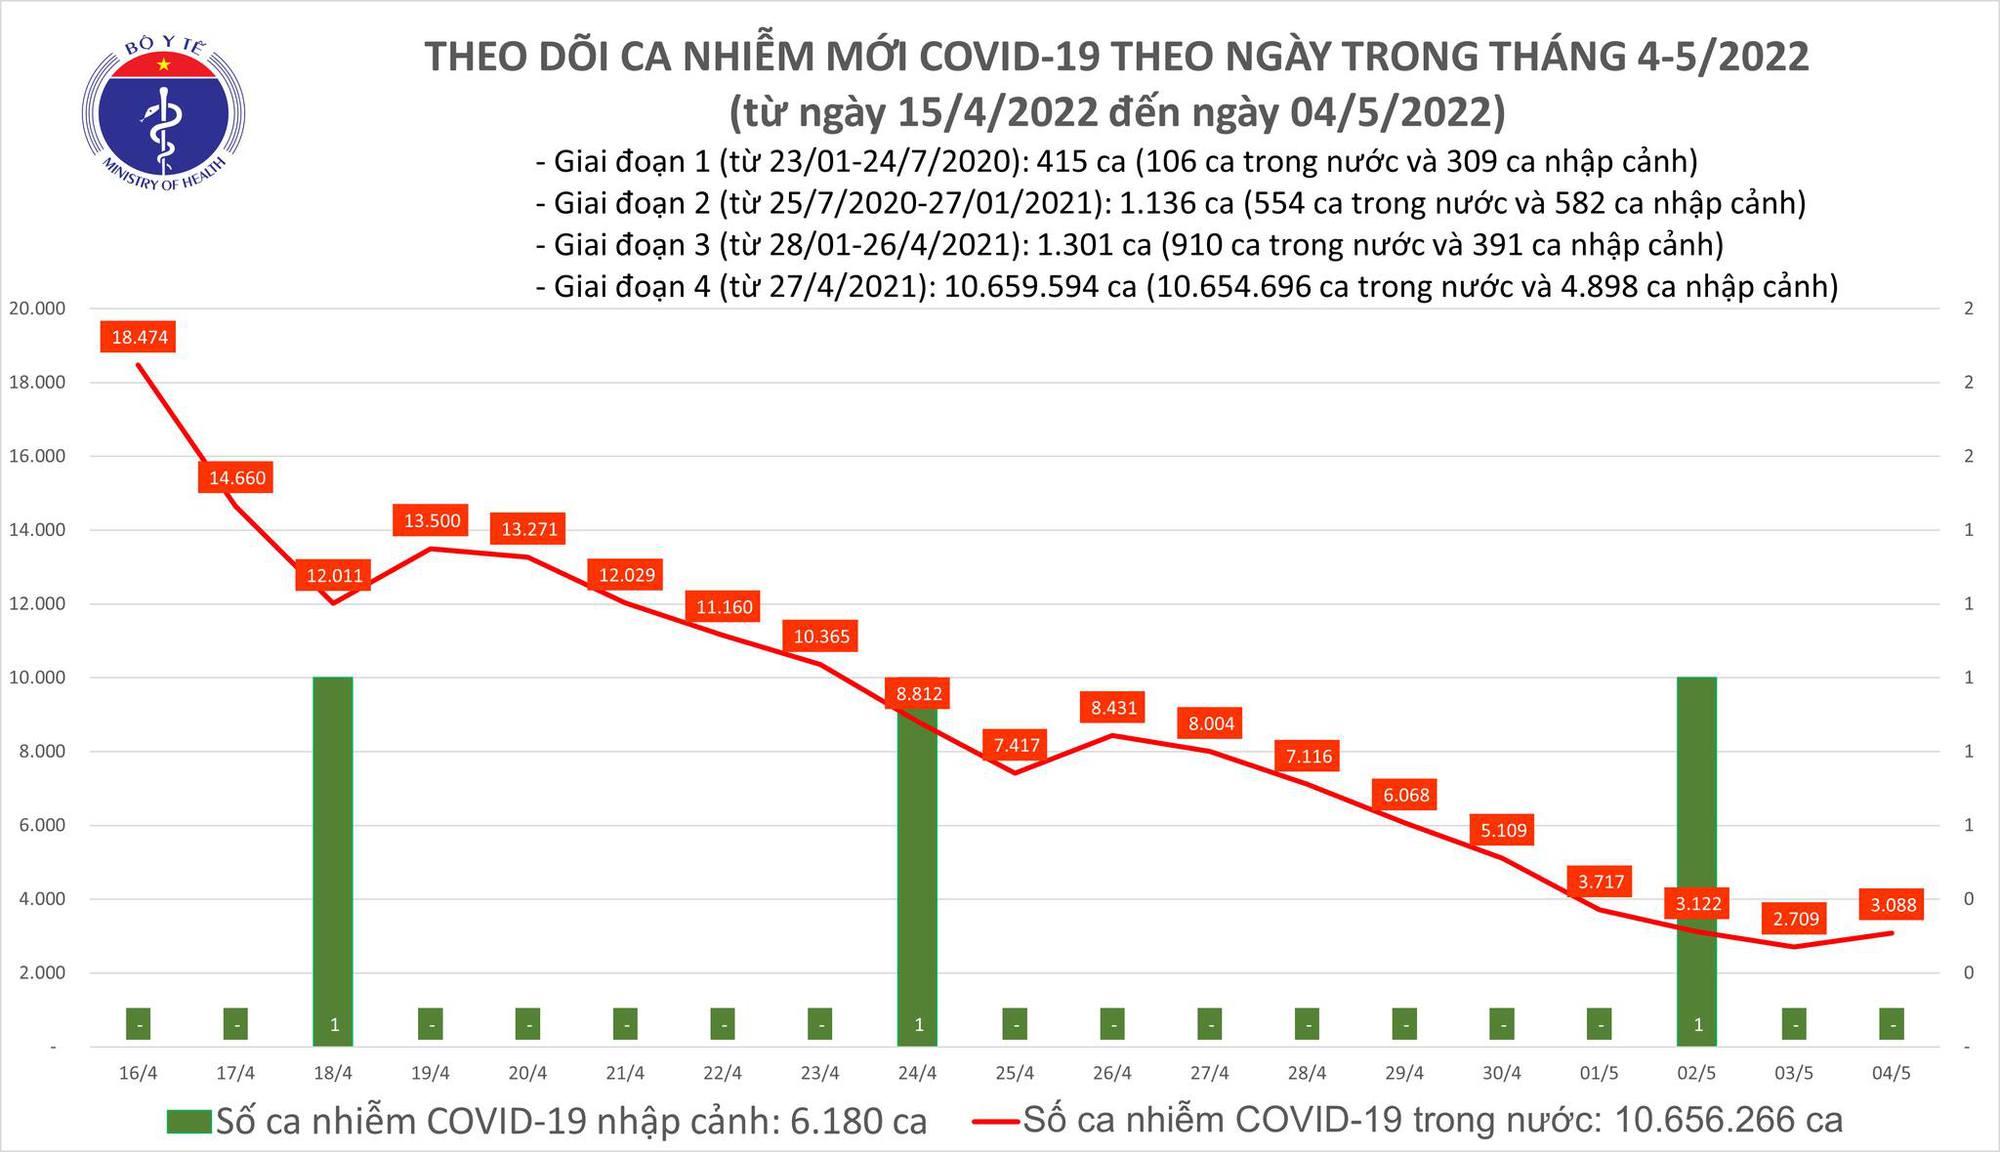 Covid-19 ngày 4/5: Chỉ ghi nhận 3.000 ca mới tại 48 tỉnh, TP - Ảnh 1.